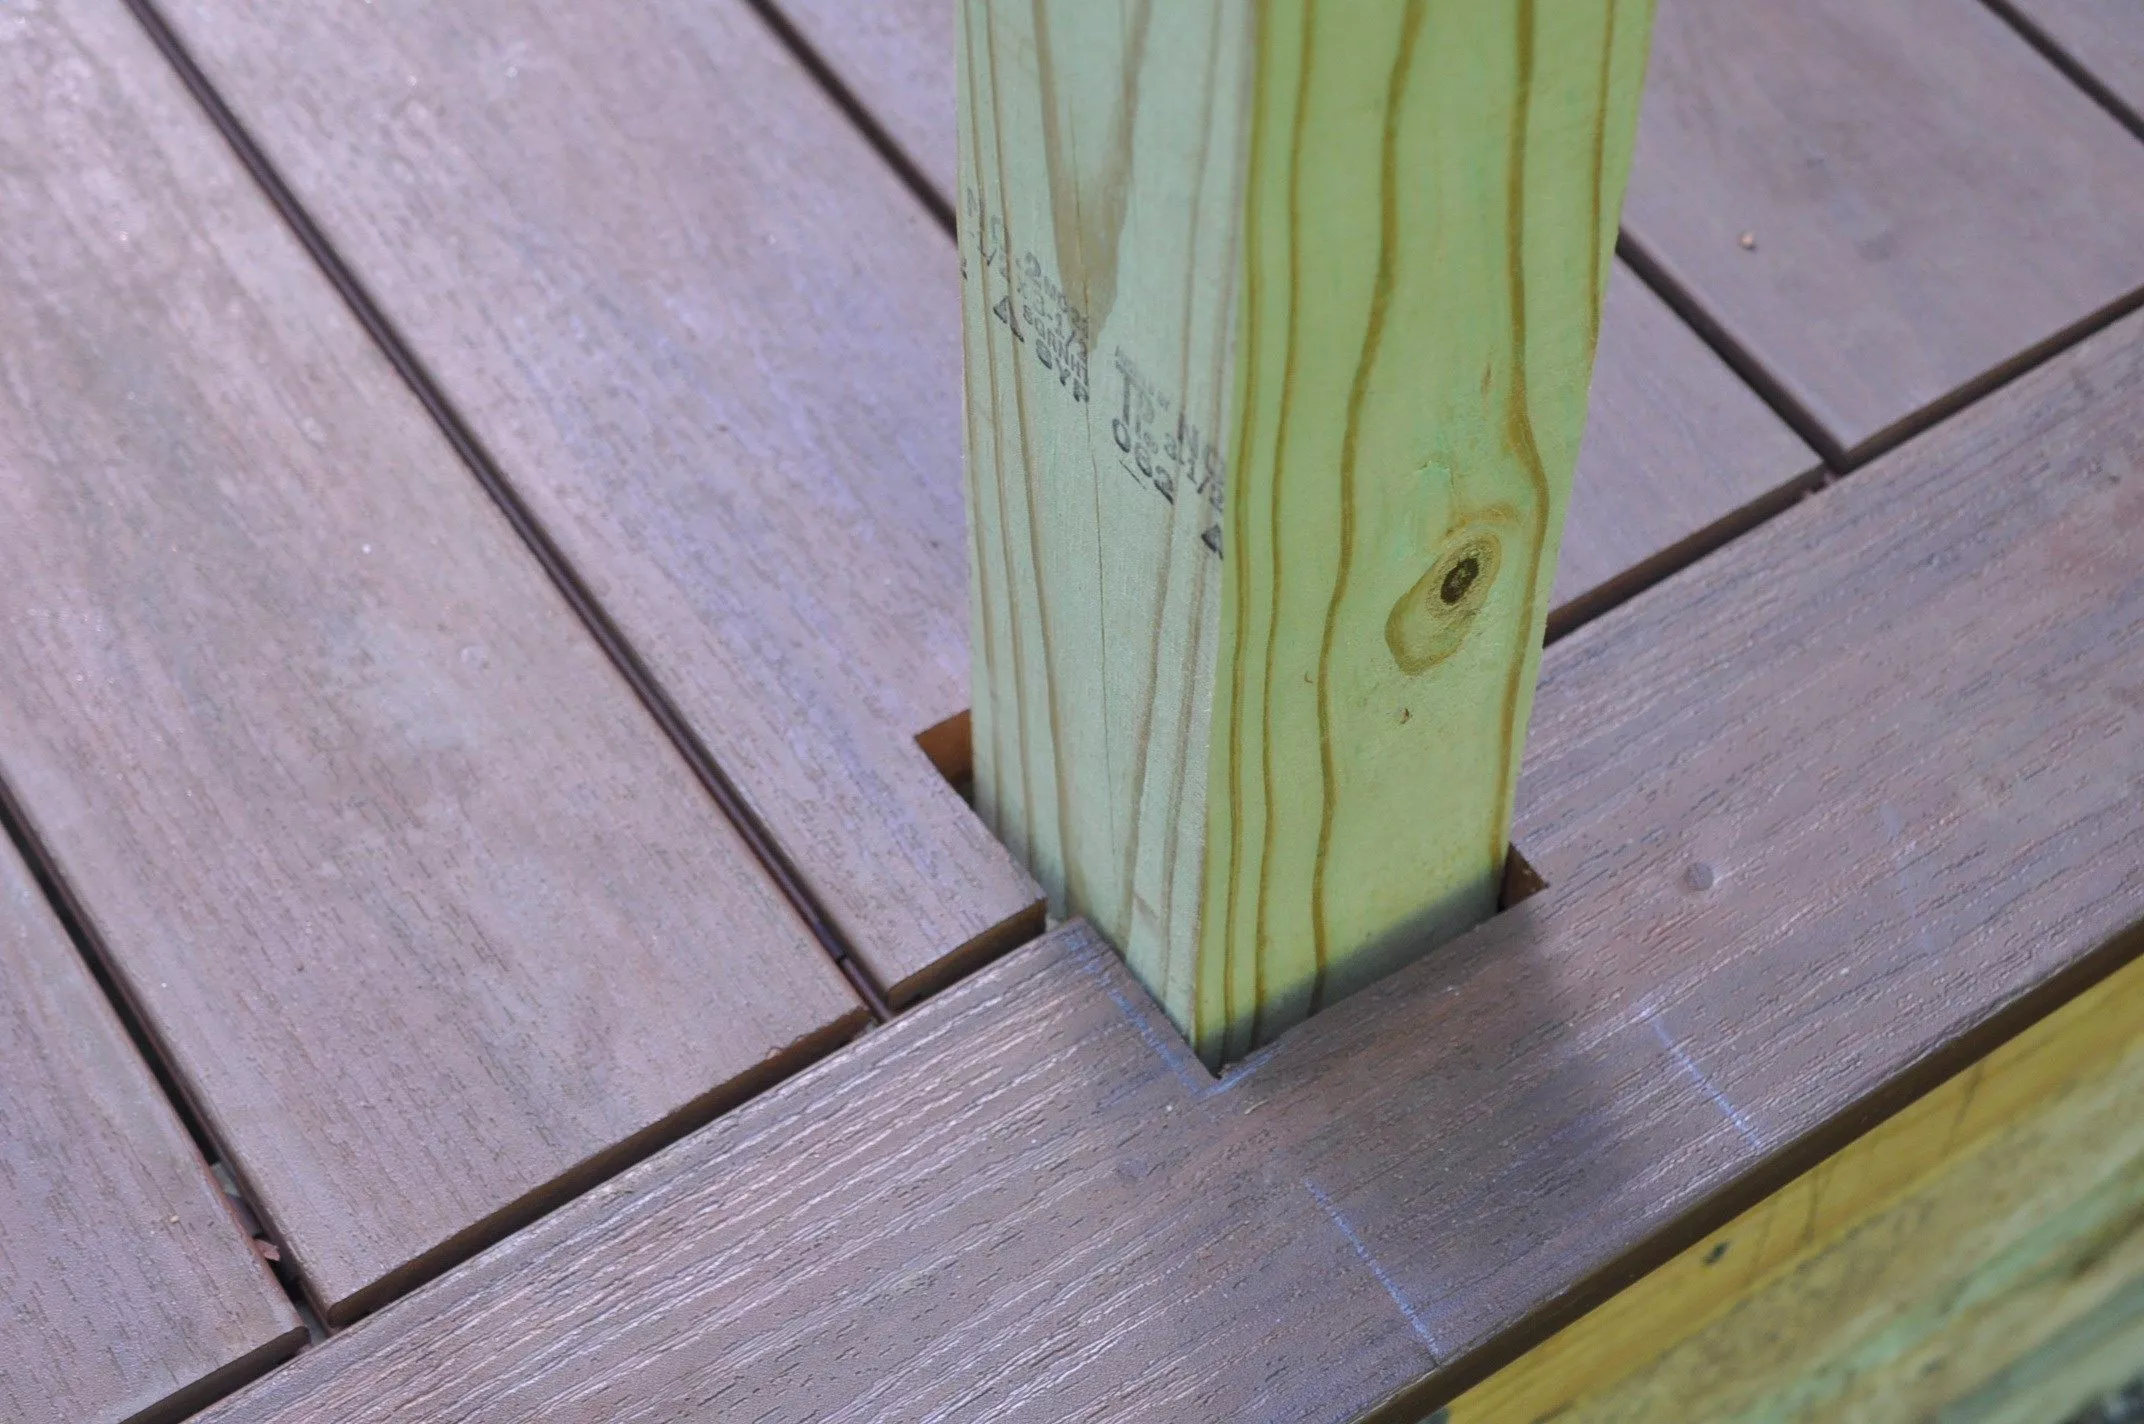 How To Install Trex Deck Posts Installing Composite Decking | Decks.com